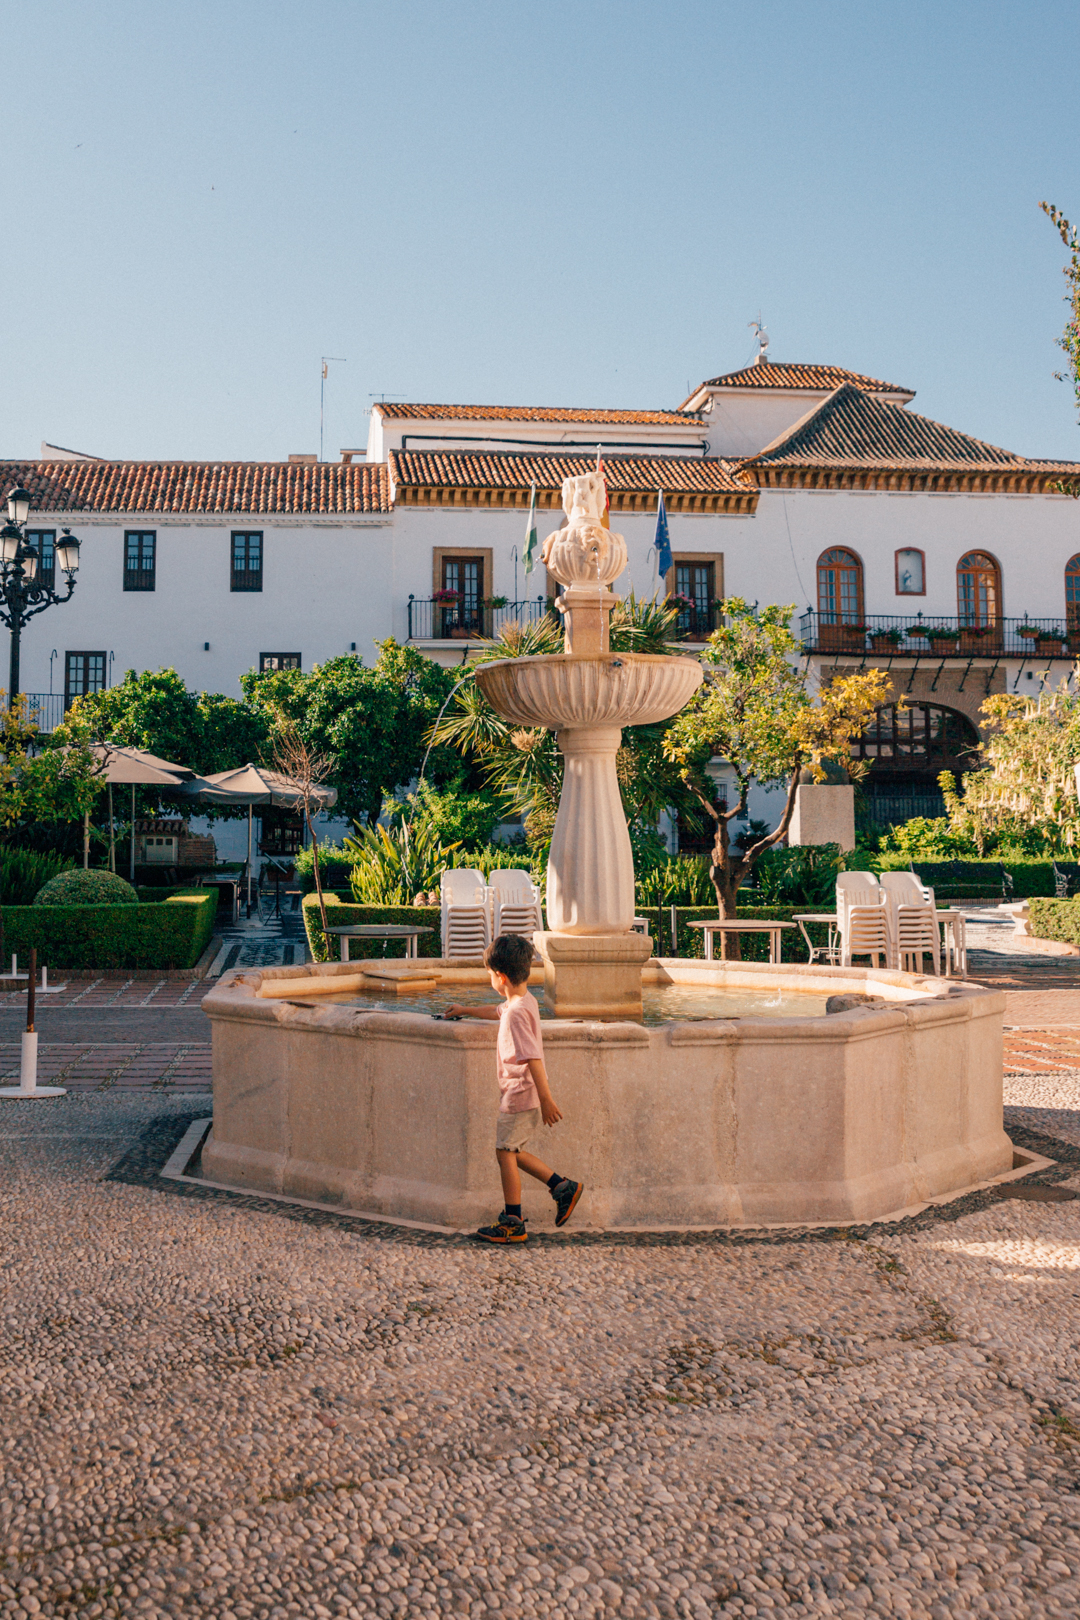 the fountain at plaza de los naranjos in Marbella, Spain